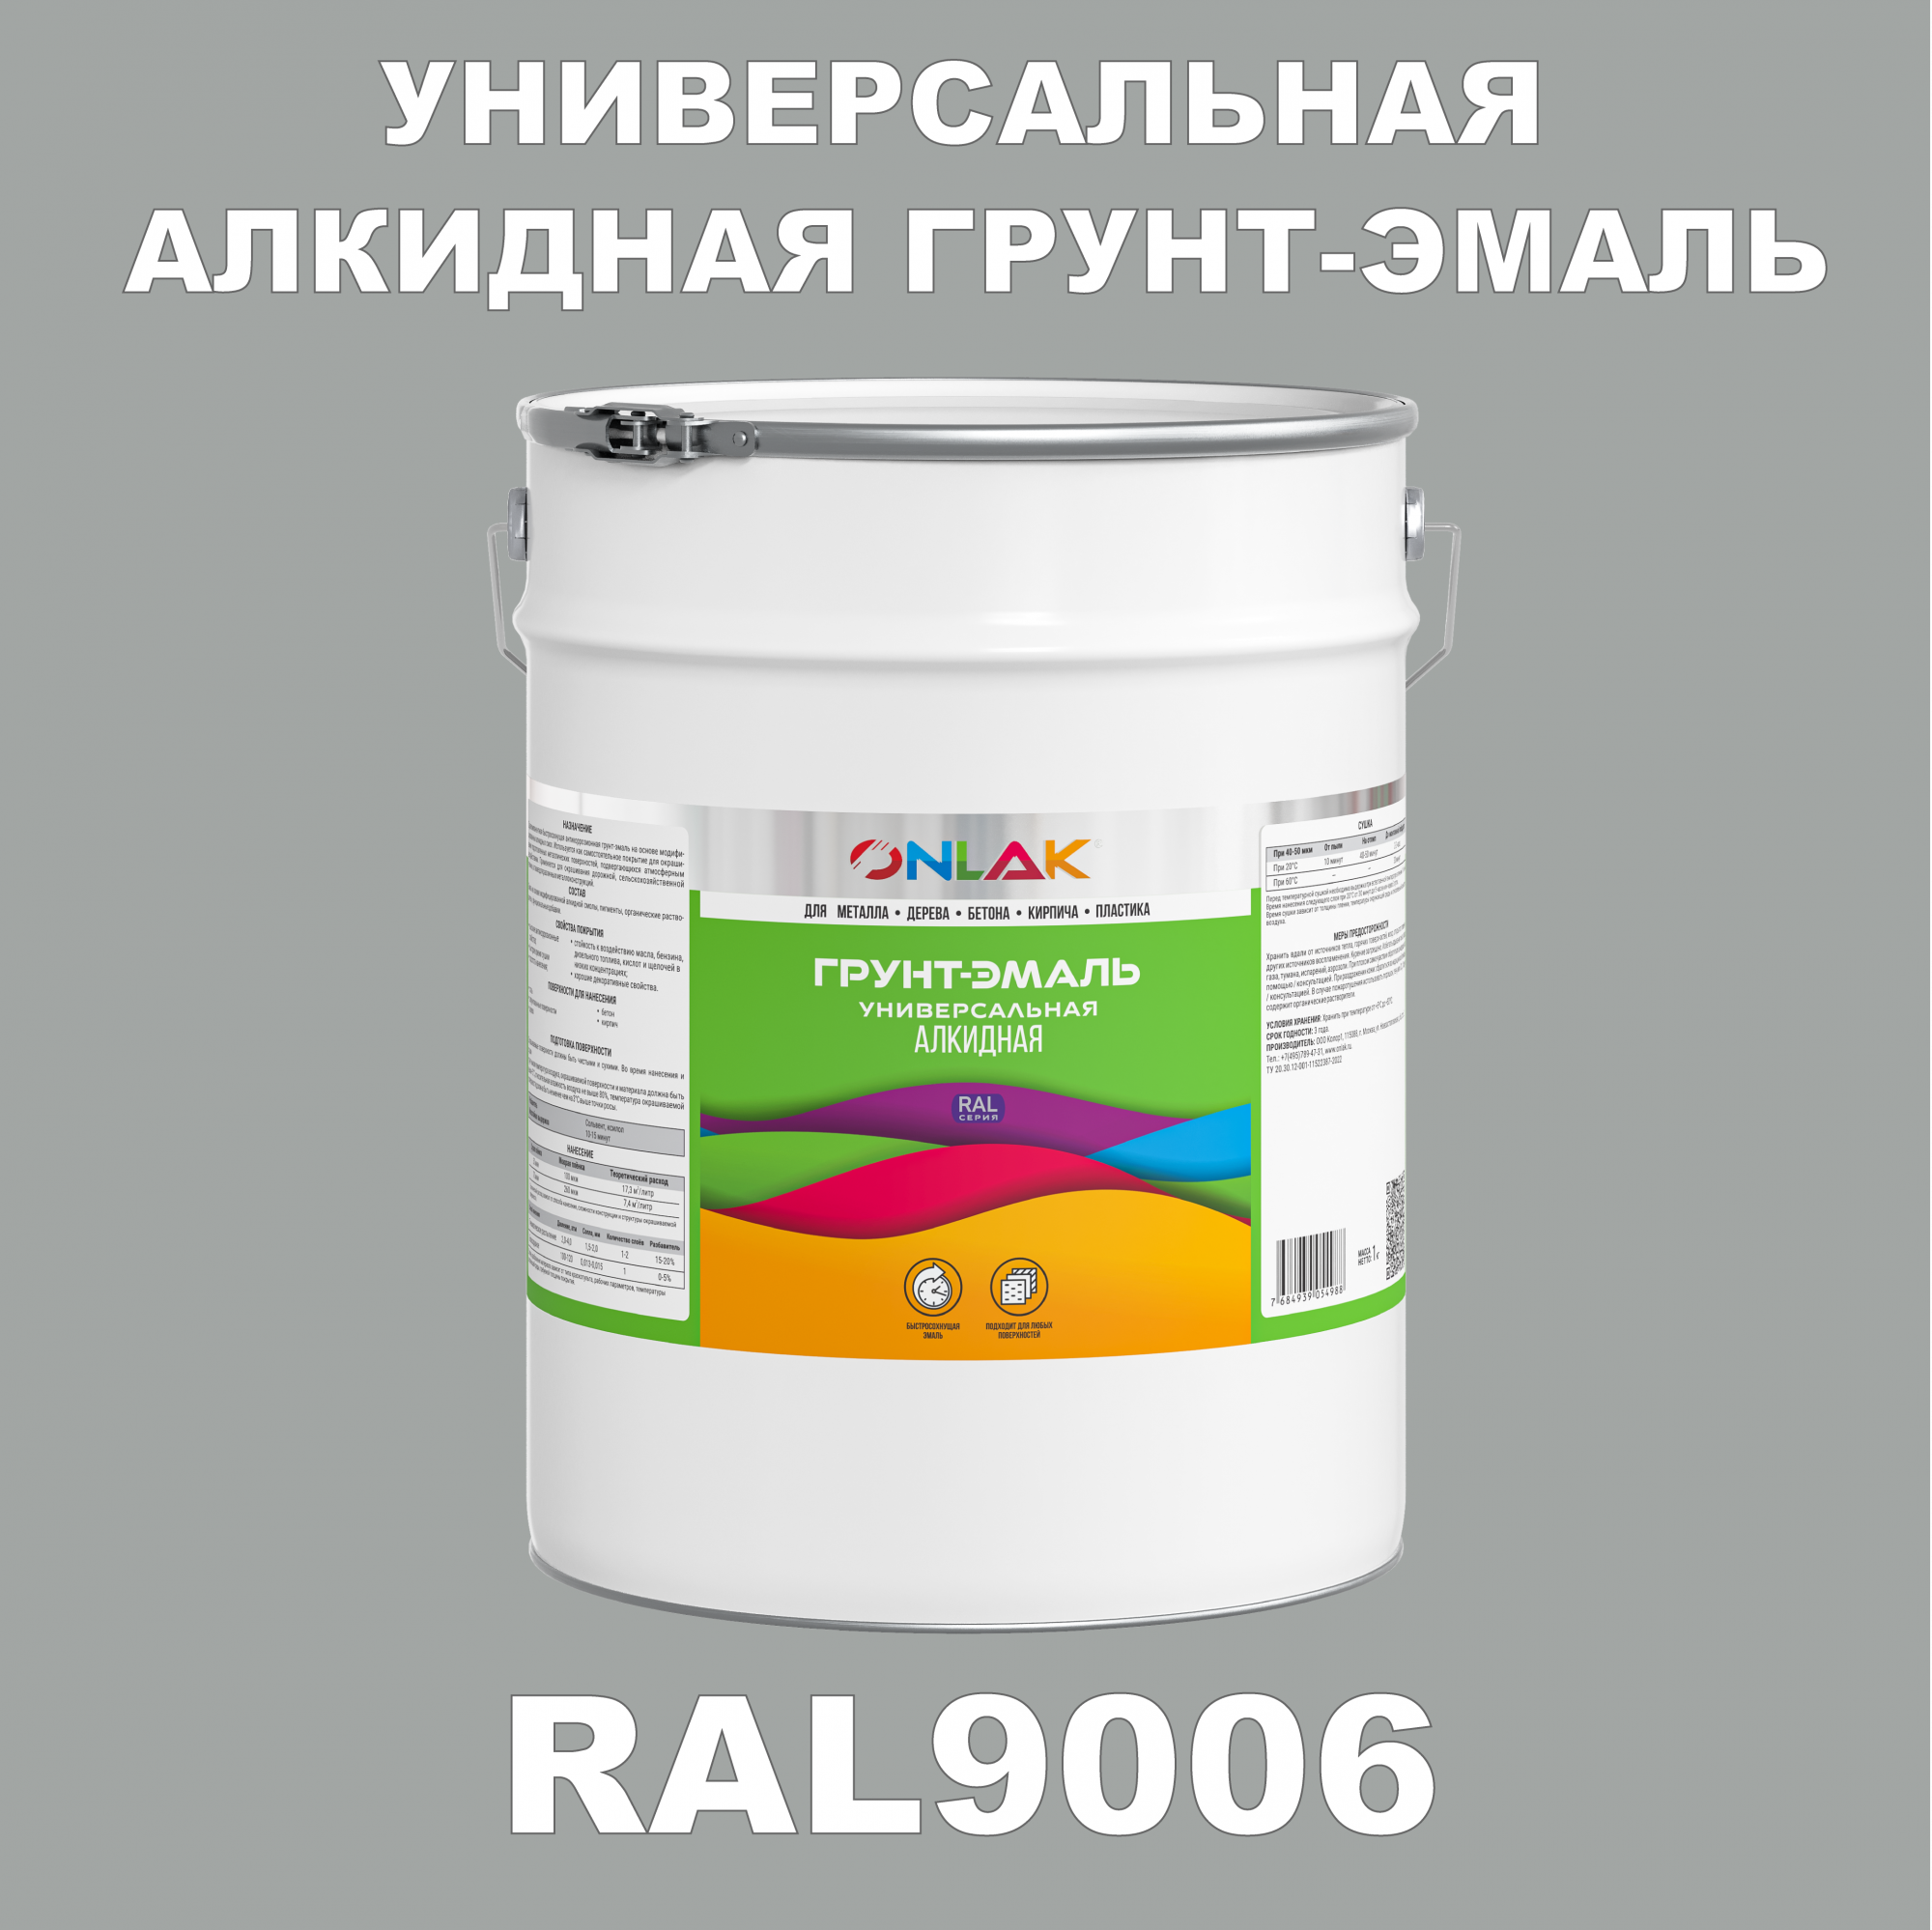 Грунт-эмаль ONLAK 1К RAL9006 антикоррозионная алкидная по металлу по ржавчине 20 кг грунт эмаль yollo по ржавчине алкидная серая 0 9 кг